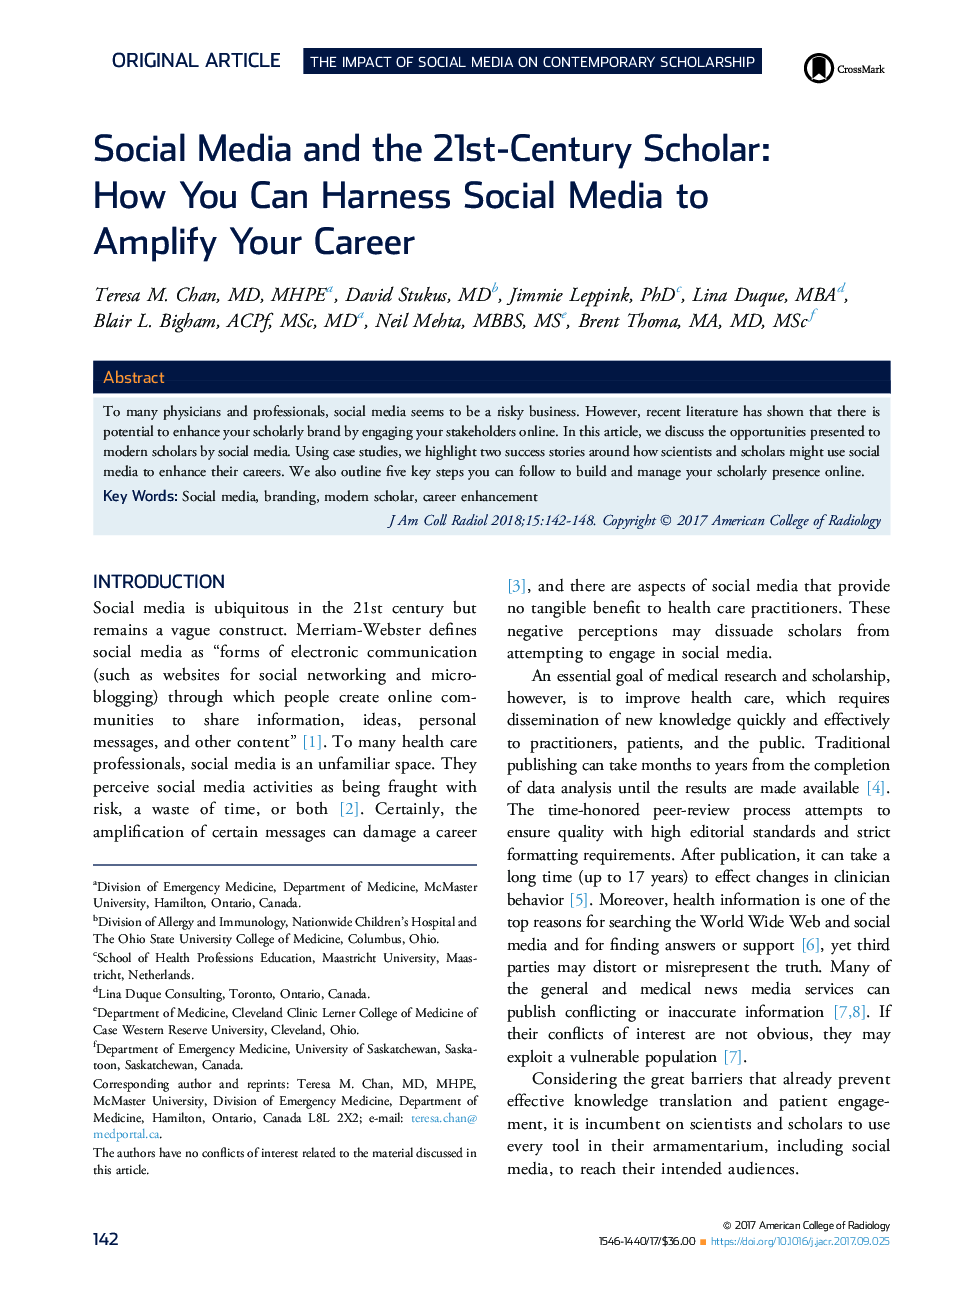 رسانه های اجتماعی و دانشمند قرن بیست و یکم: چگونه می توانید رسانه های اجتماعی را برای تقویت حرفه ای خود افزایش دهید 